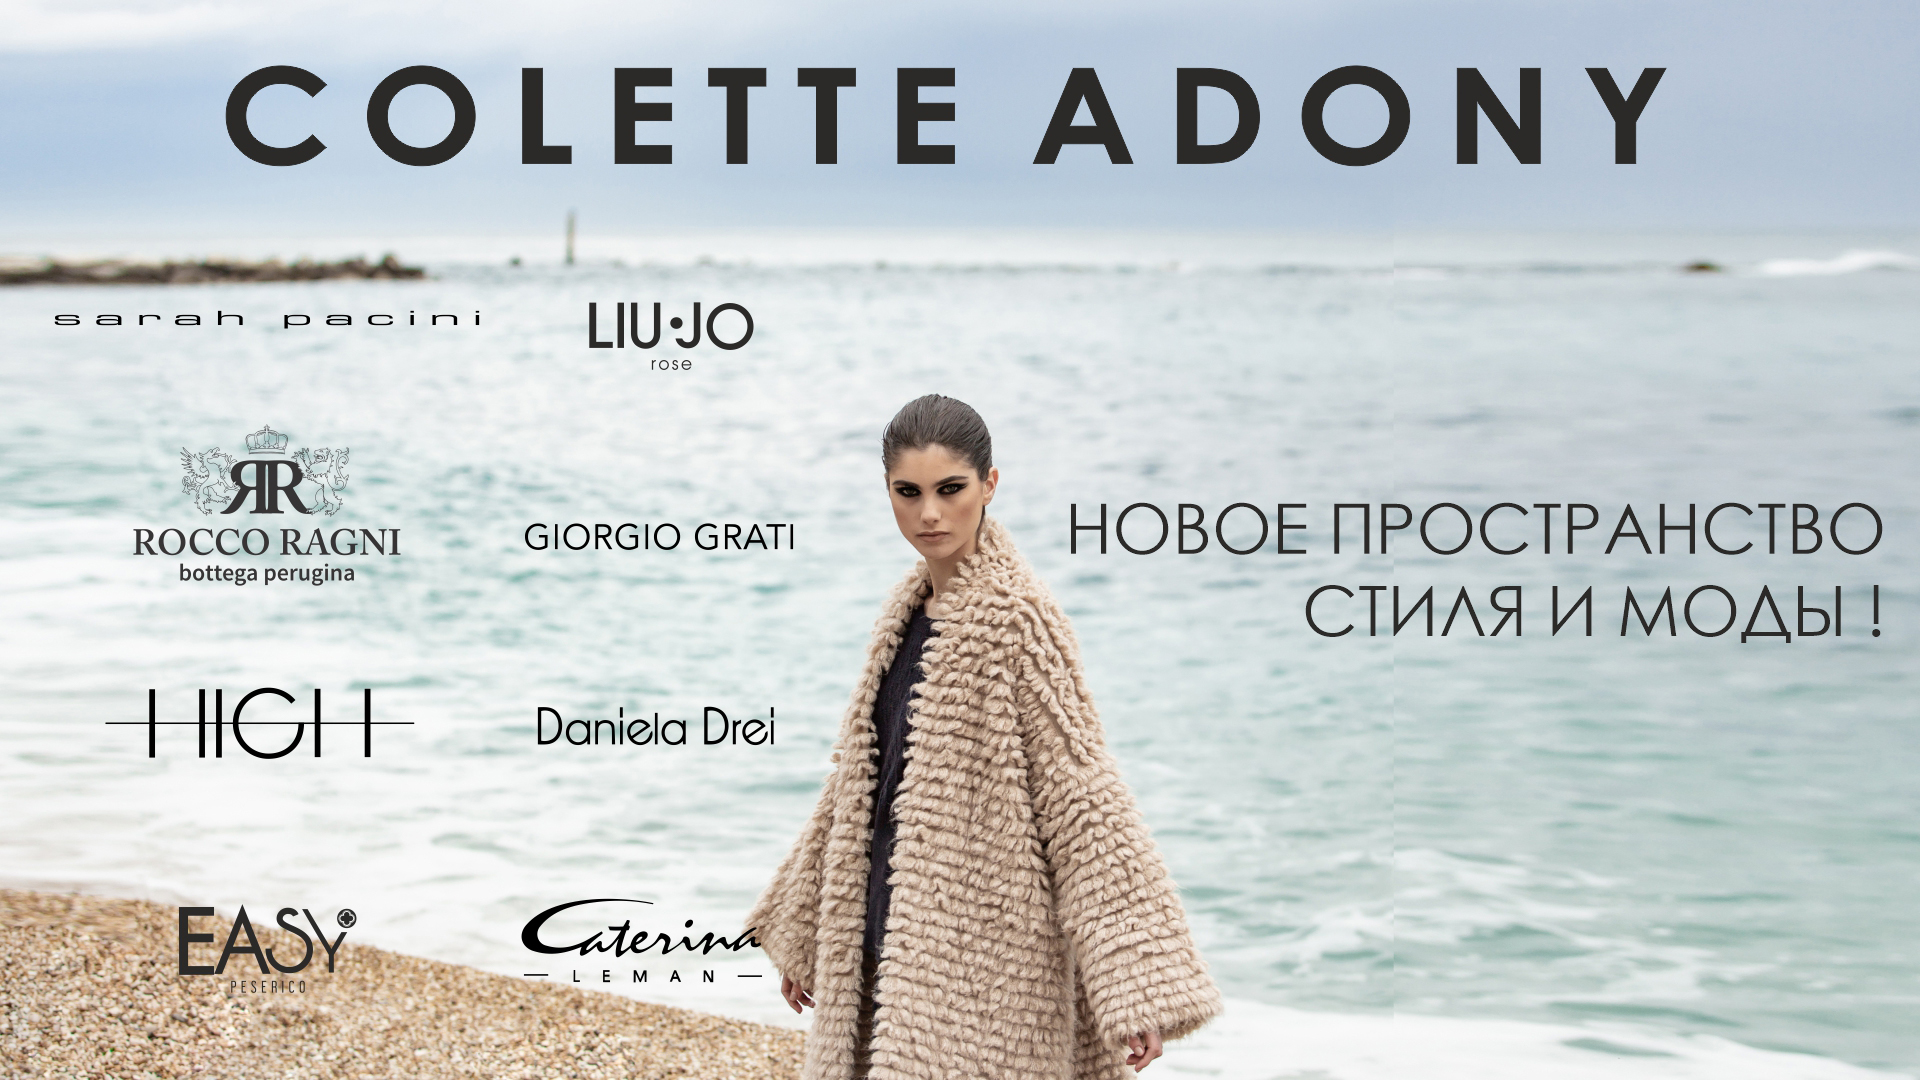 В МТК “ЕвроПарк” открылся бутик женской одежды “COLETTE ADONY”